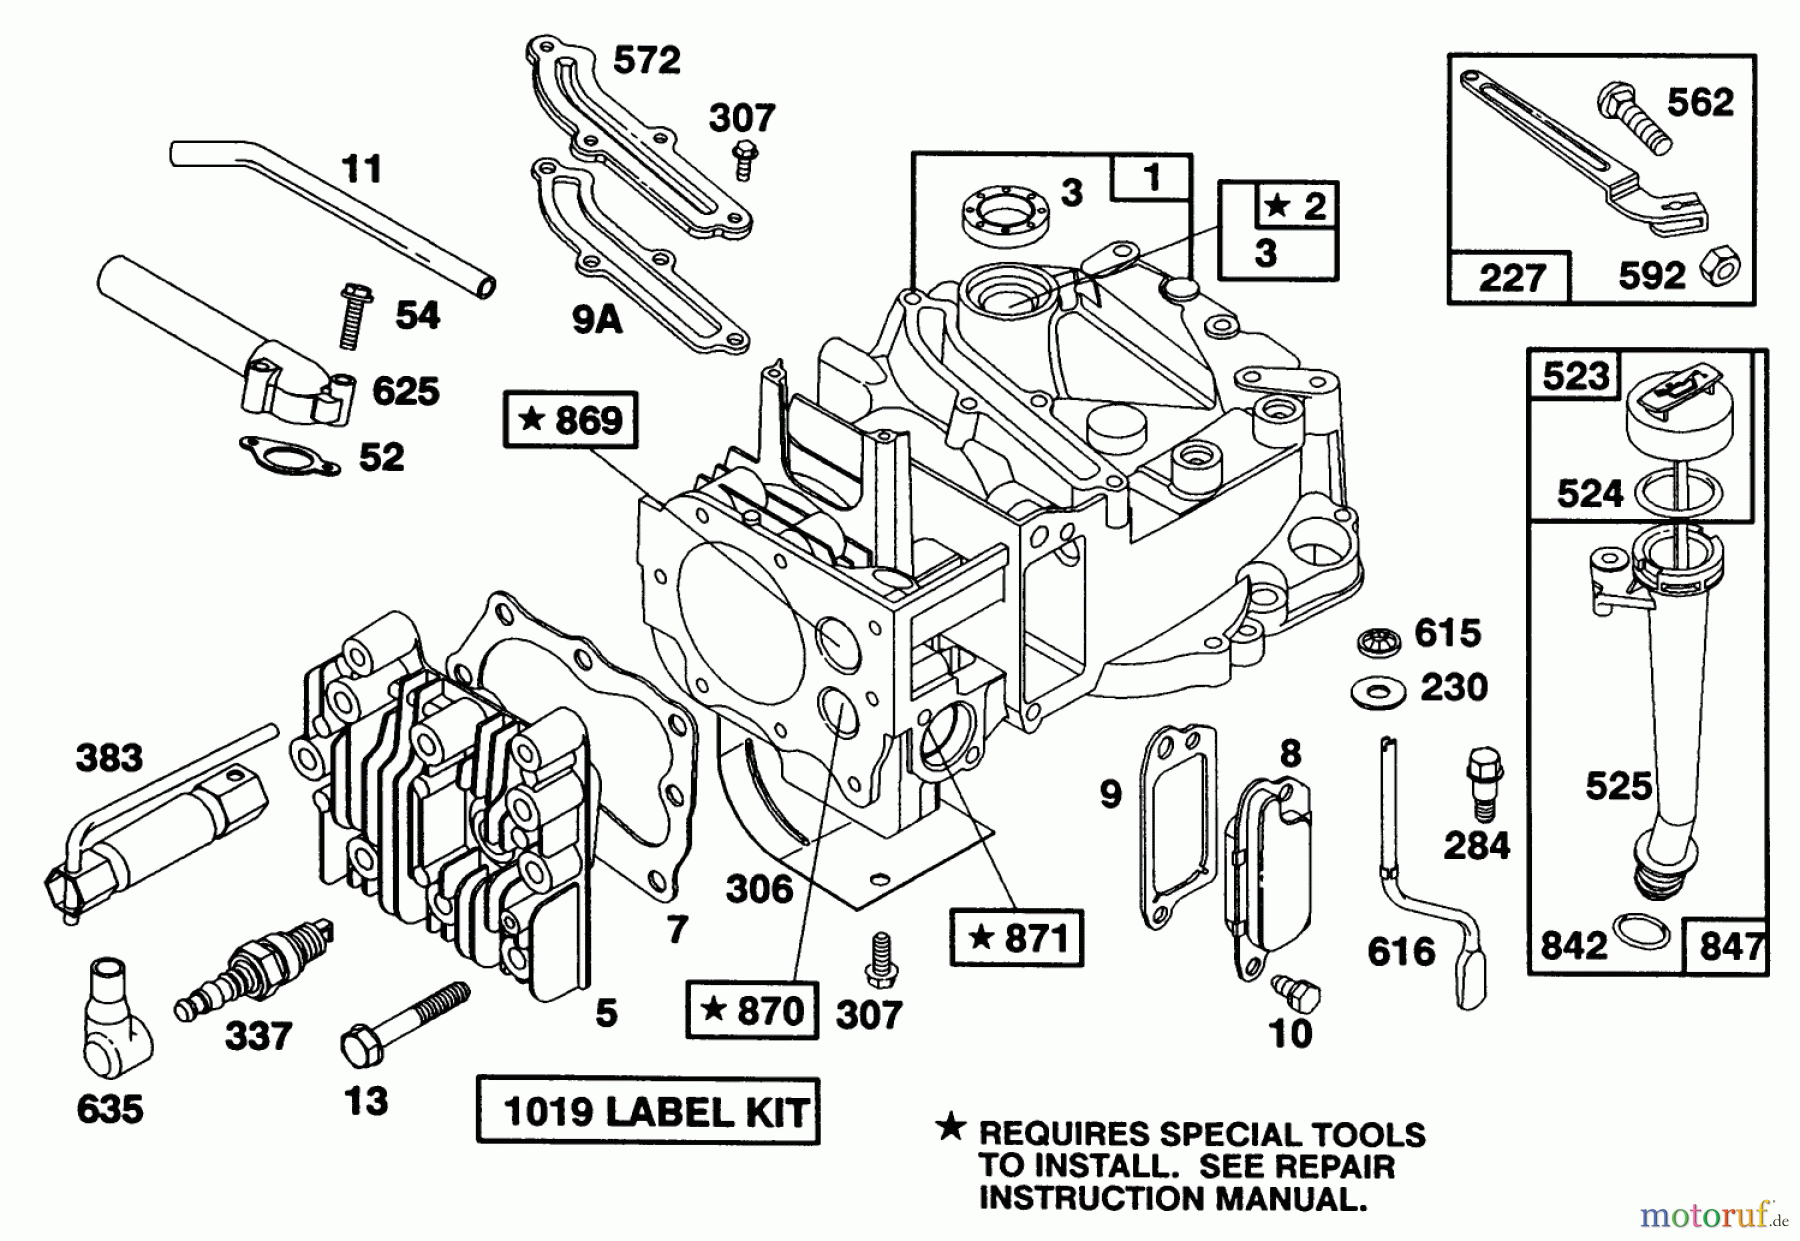  Toro Neu Mowers, Walk-Behind Seite 1 20218 - Toro Lawnmower, 1991 (1000001-1999999) ENGINE BRIGGS & STRATTON MODEL 124702-3115-01 #1